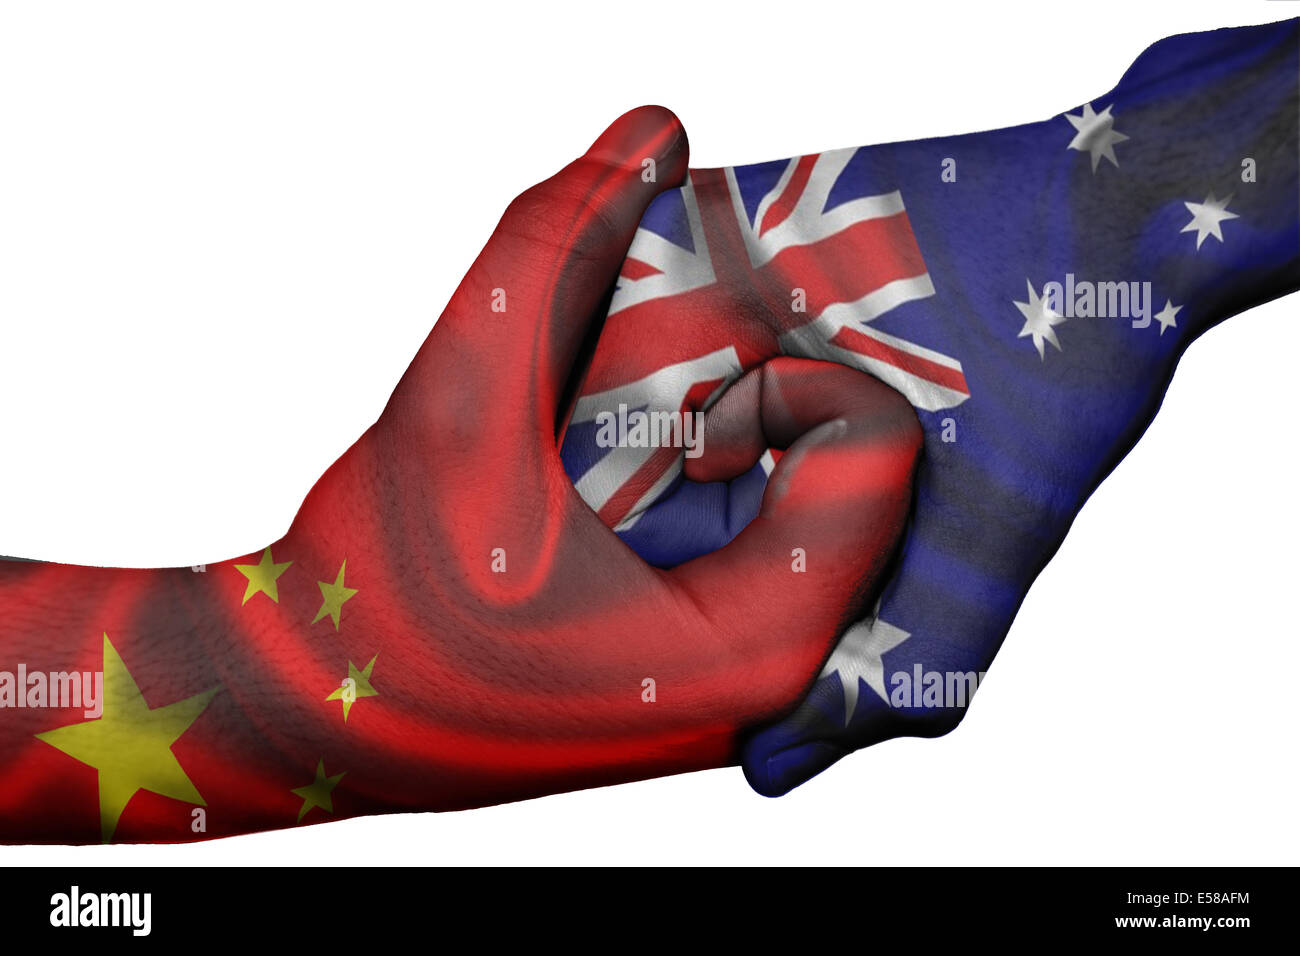 Handshake diplomatiche tra paesi: bandiere di Cina e Australia sovradipinta le due mani Foto Stock